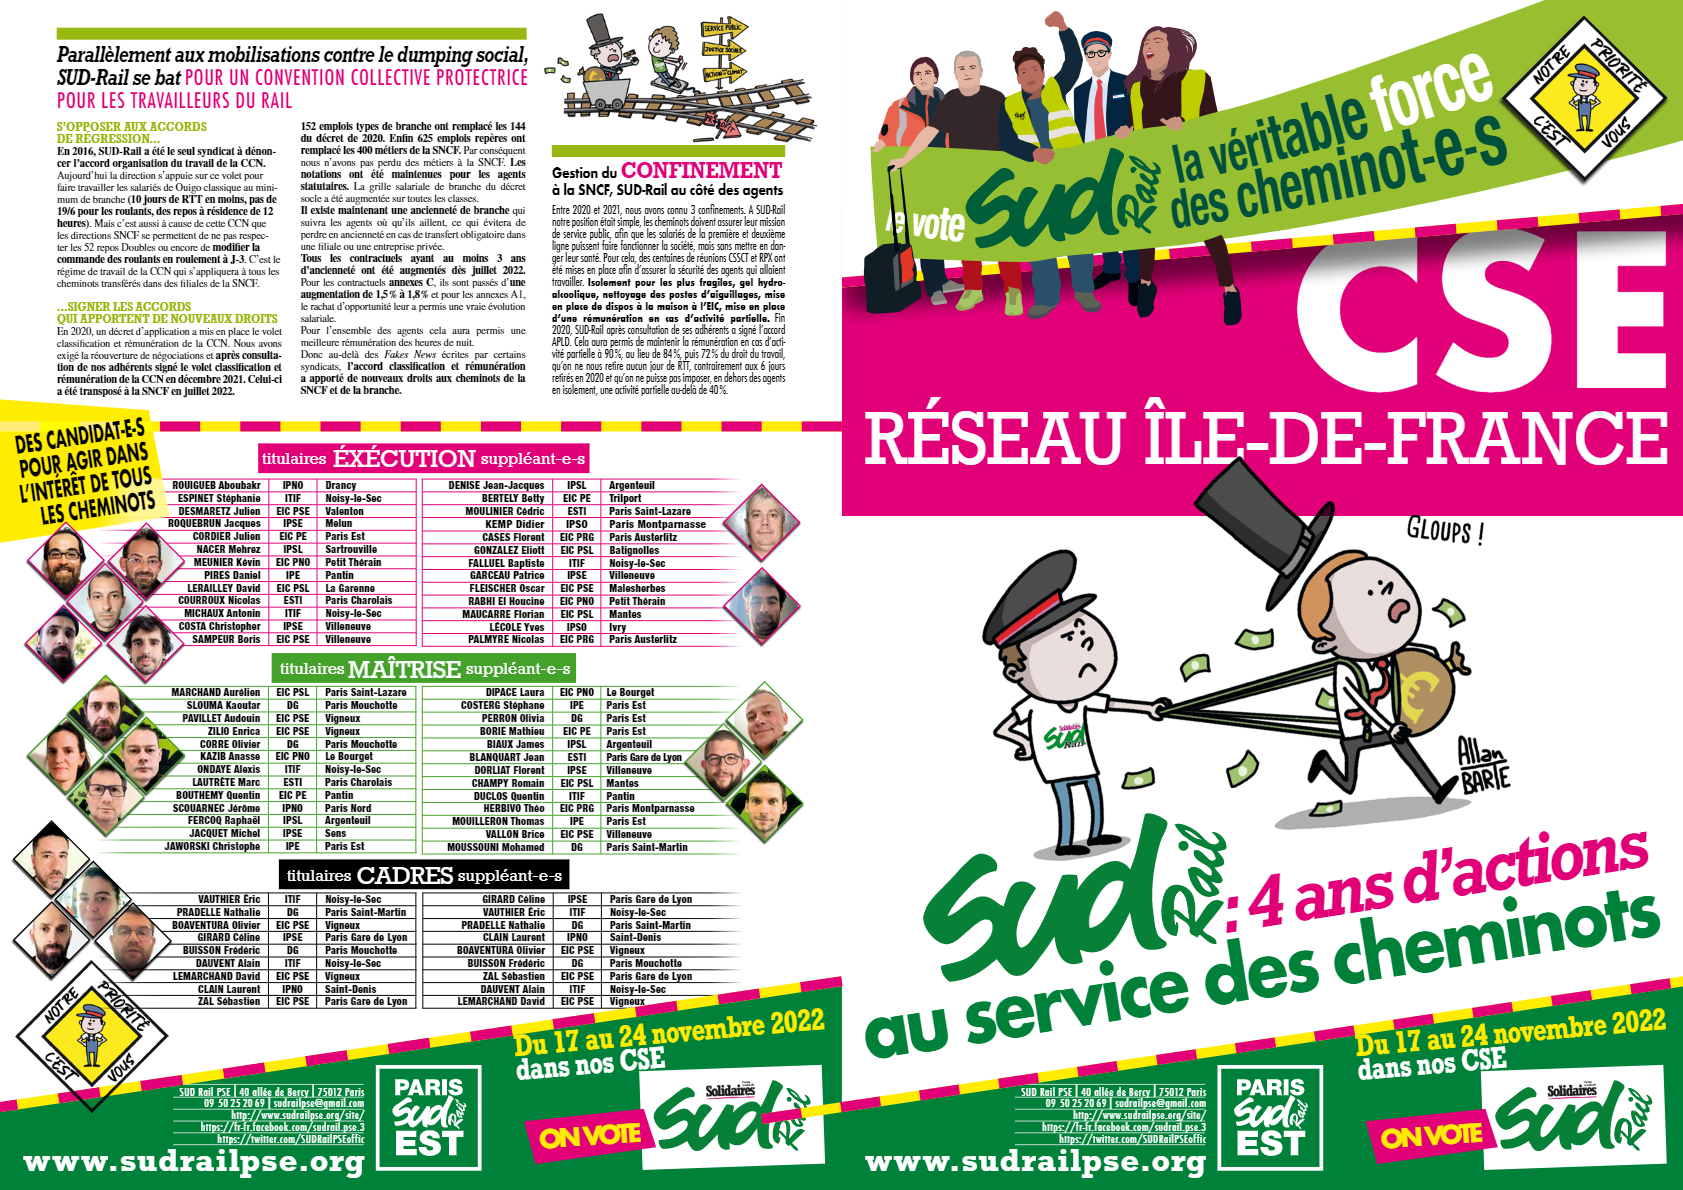 Elections pro 2022 : CSE Réseau Ile-de-France